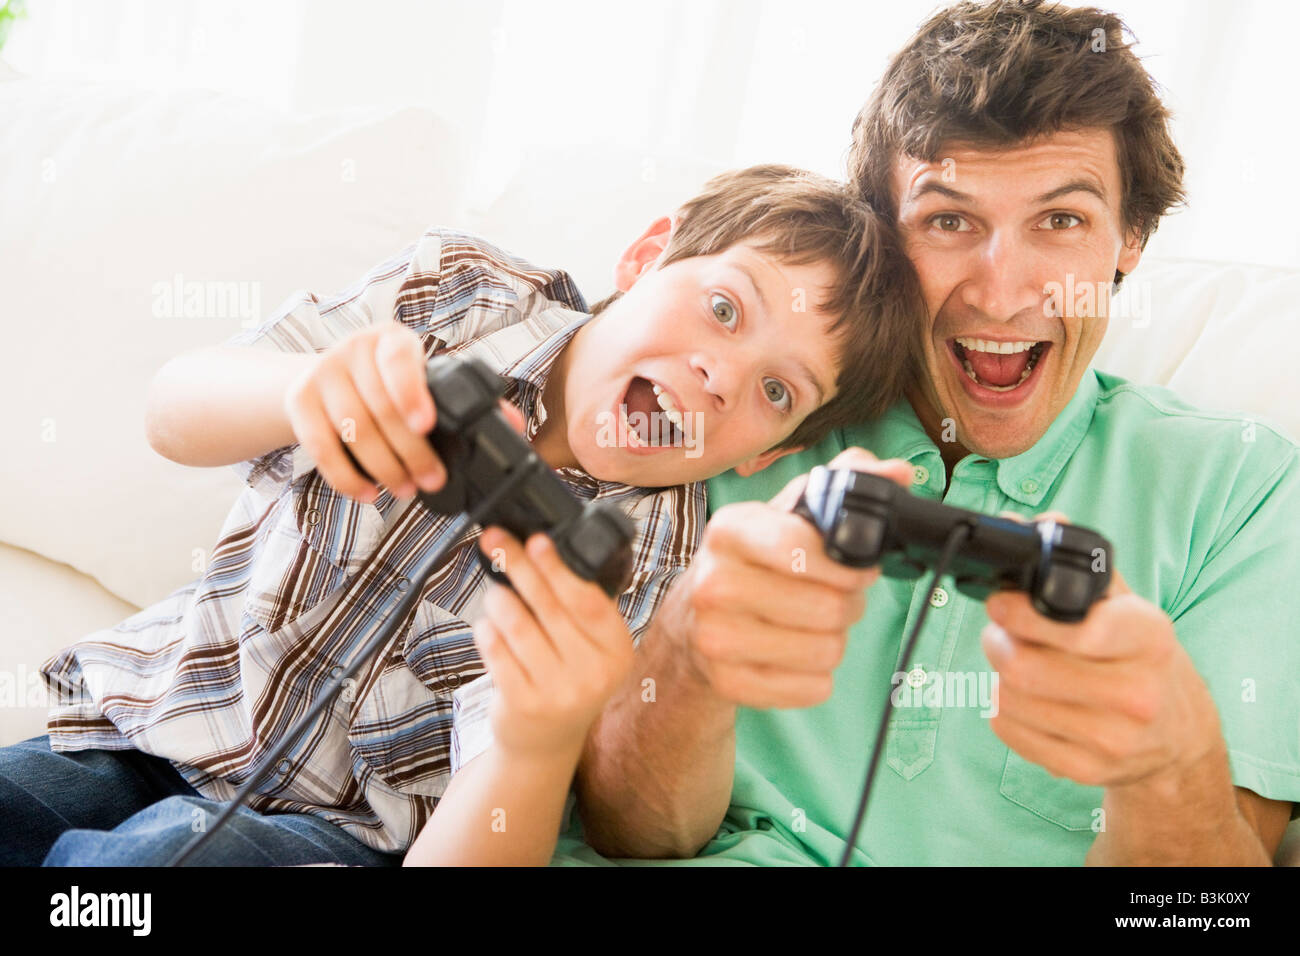 L'homme et jeune garçon avec des manettes de jeux vidéo smiling Banque D'Images